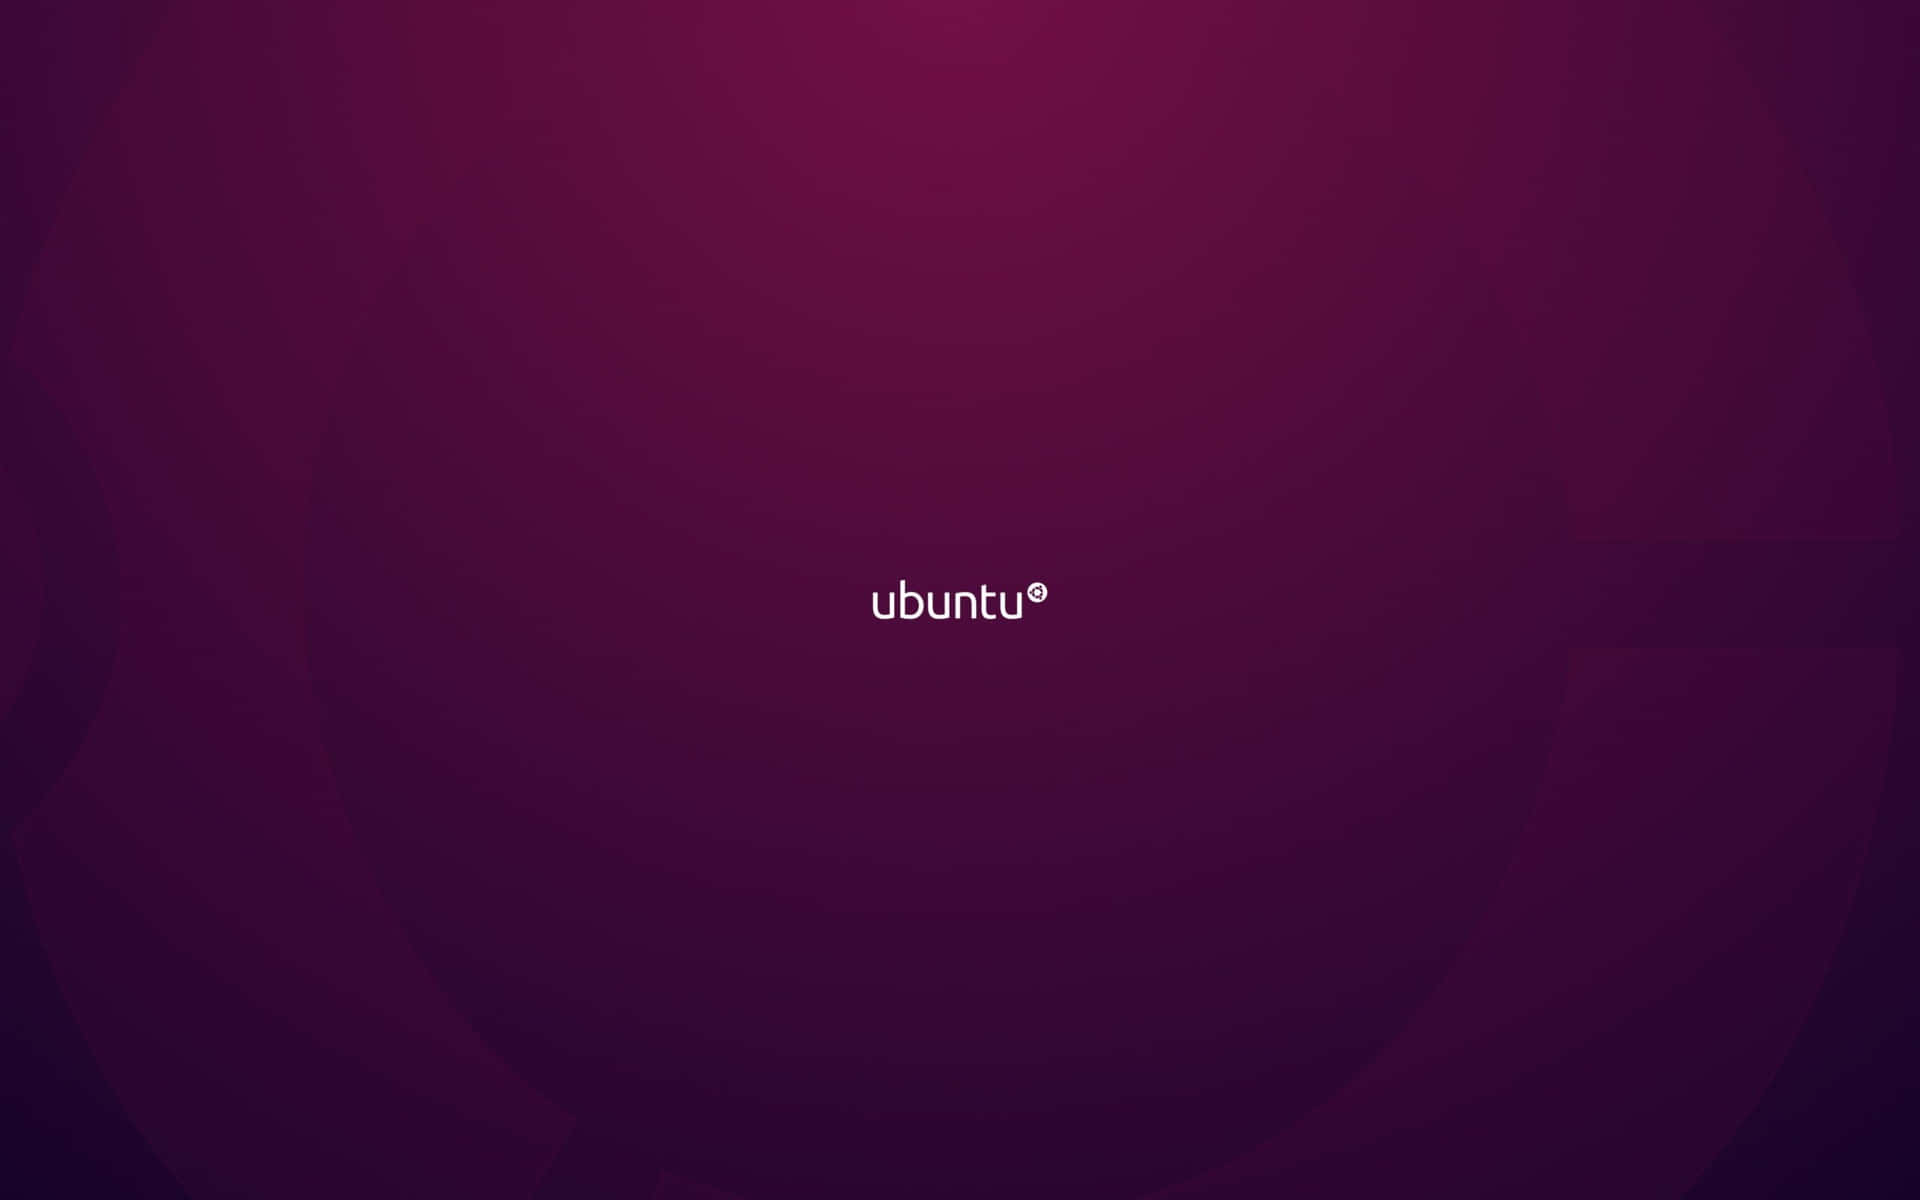 Passensie Ihren Desktop Mit Einem Ubuntu-hintergrund An.